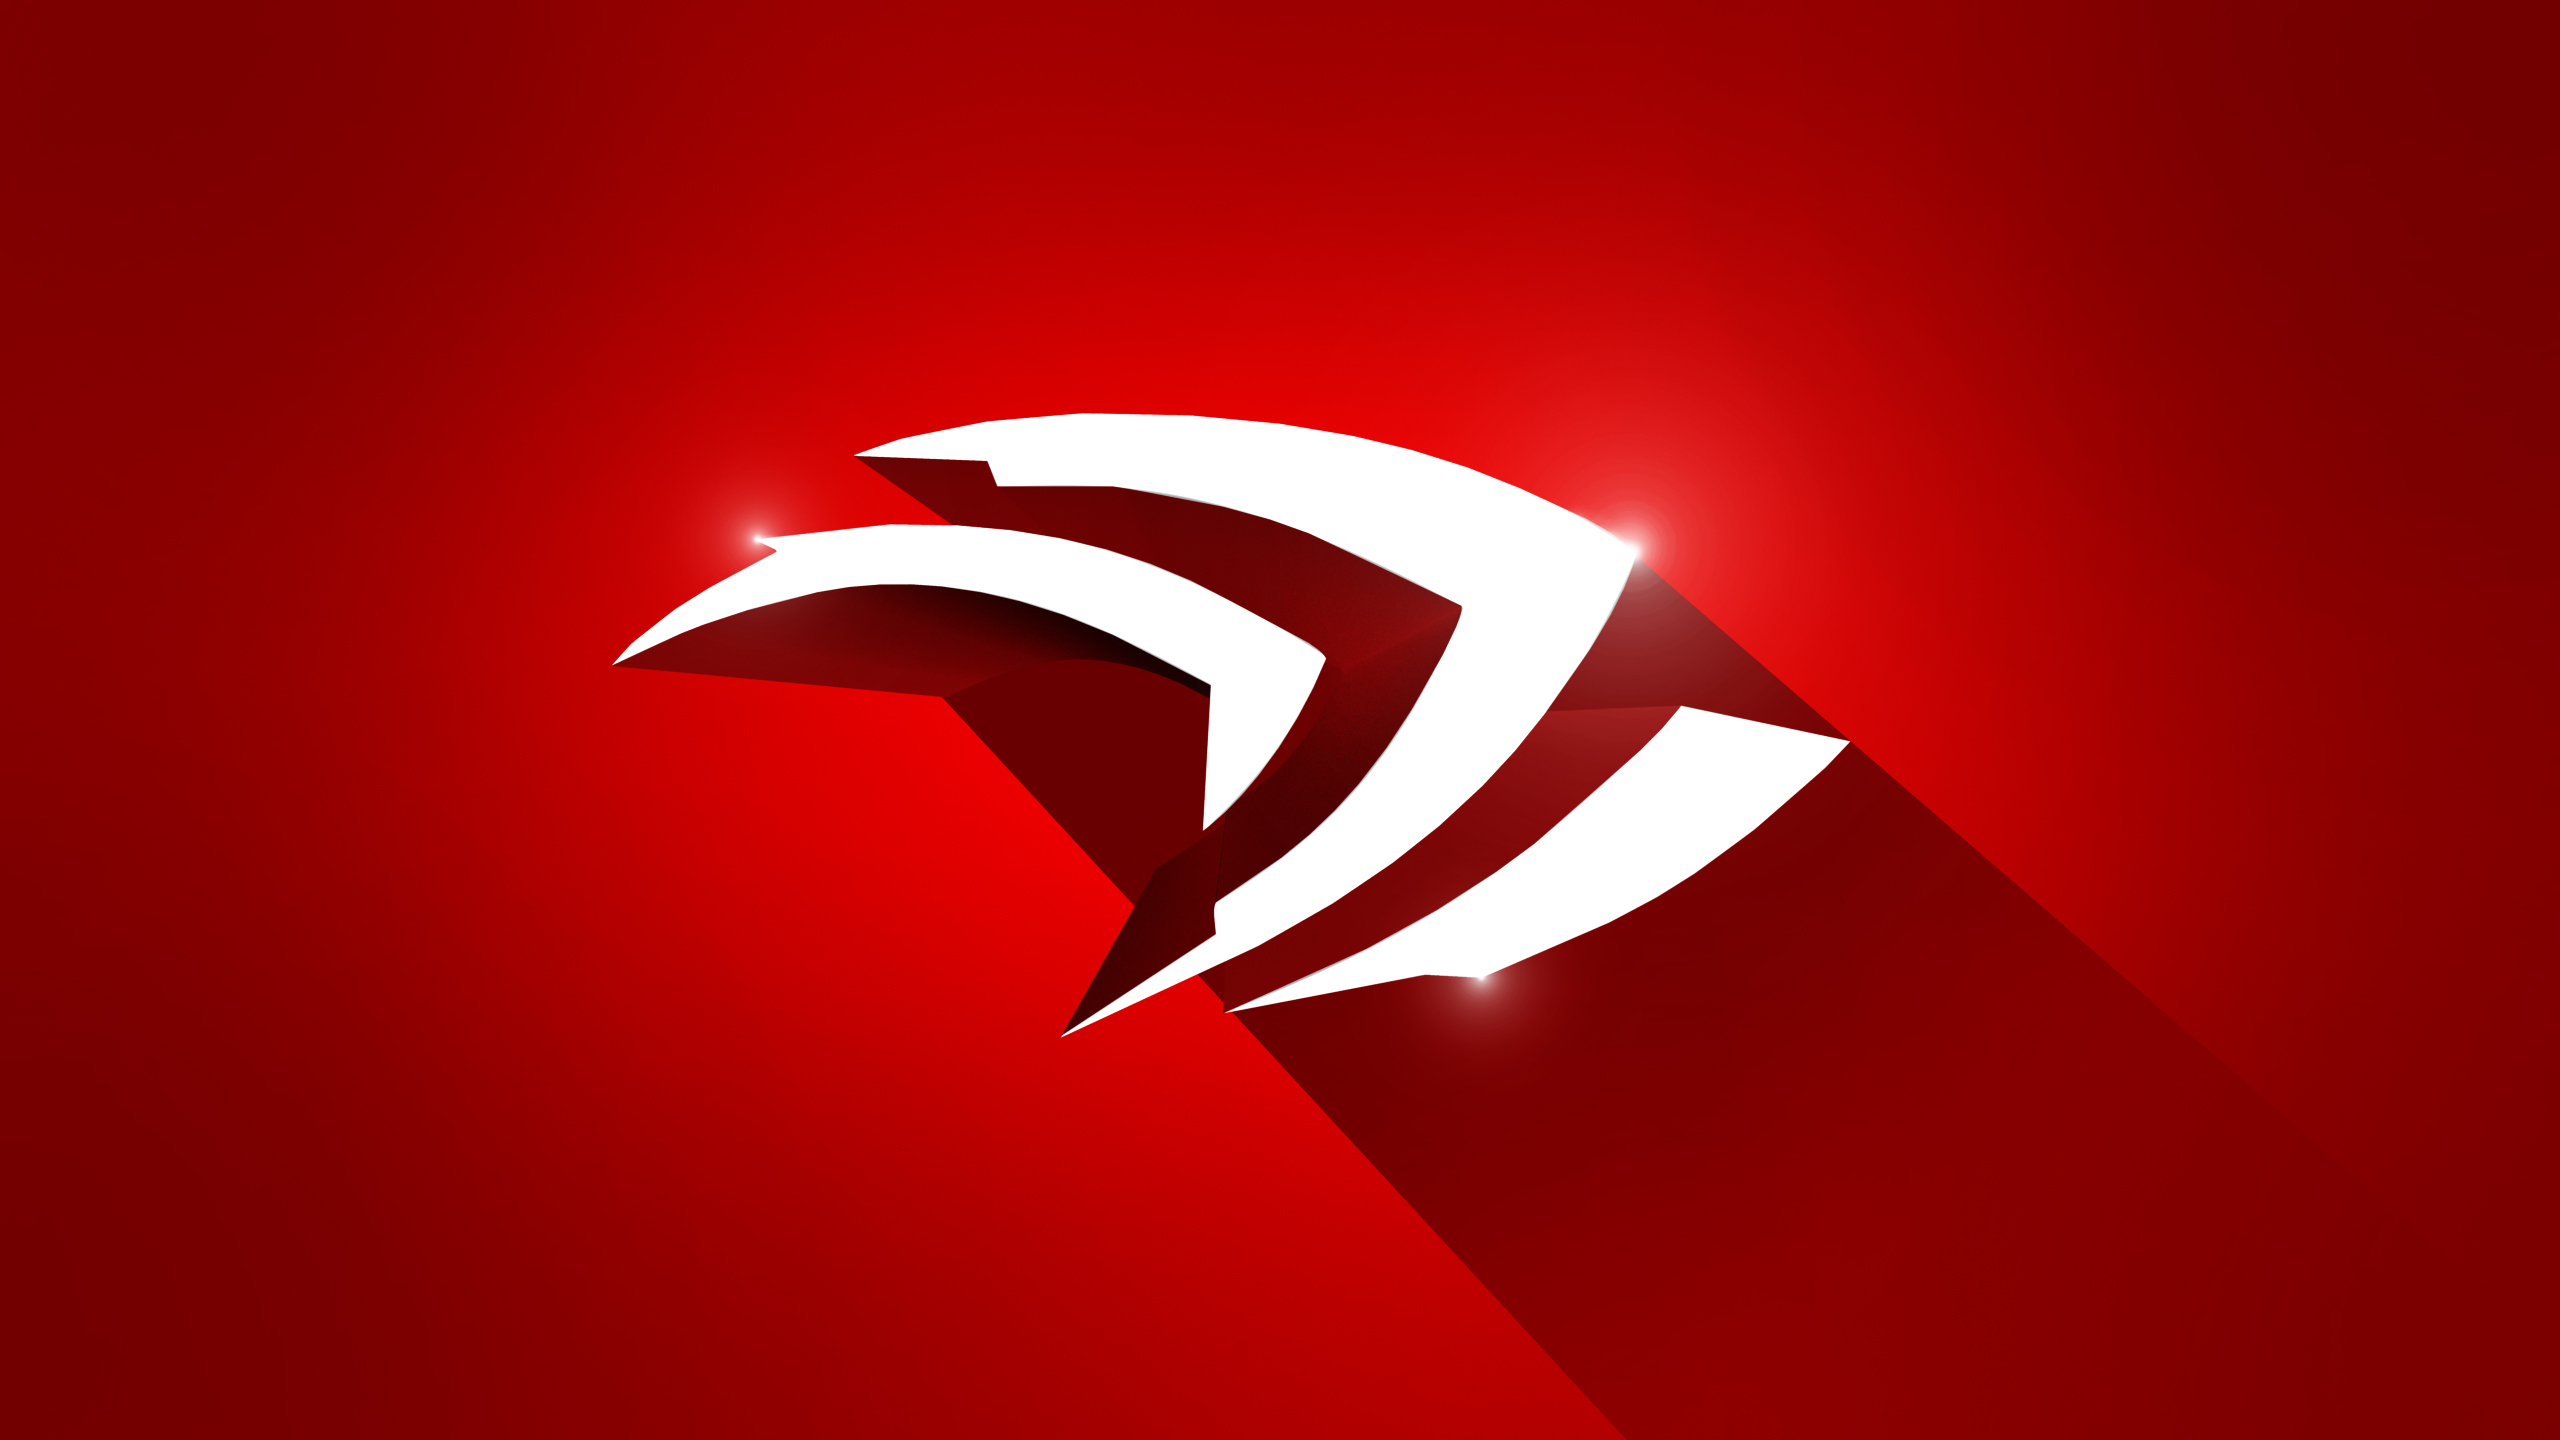 Nvidia Red Shadow 高清壁纸 桌面背景 2560x1440 Id 1053146 Wallpaper Abyss